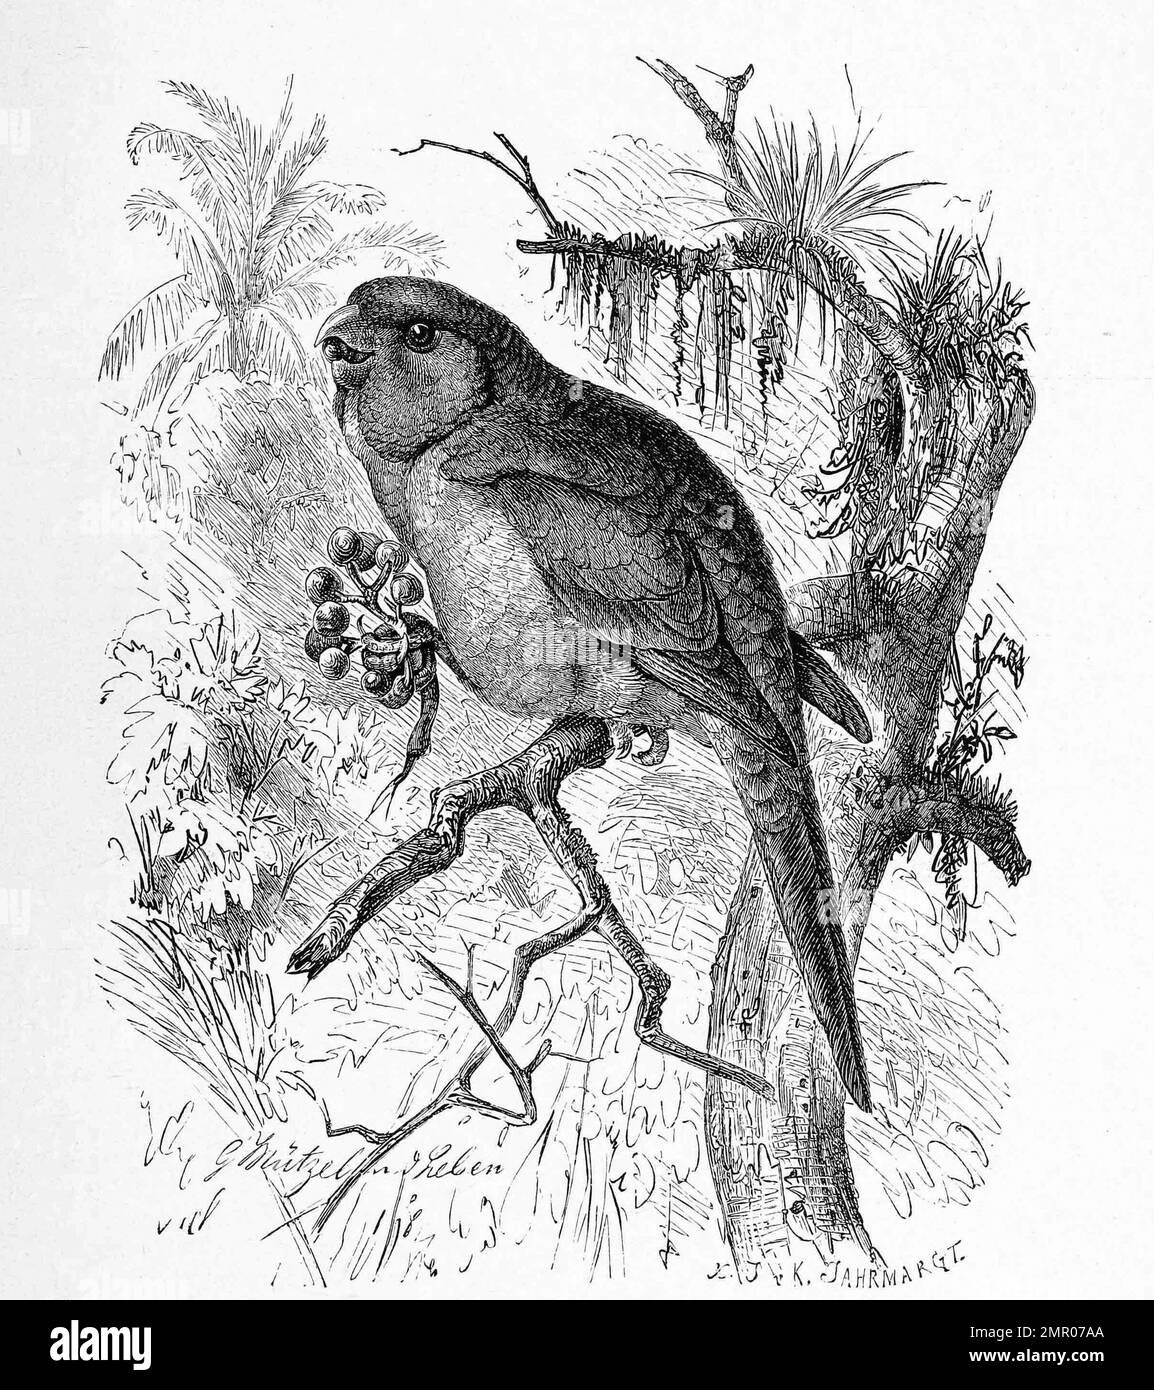 Vogel, Tirikasittich, Brotogeris tirica, eine Art der Neuweltpapageien, Historisch, restaurierte reproduktion von einer Vorlage aus dem 18. Jahrhundert Foto Stock